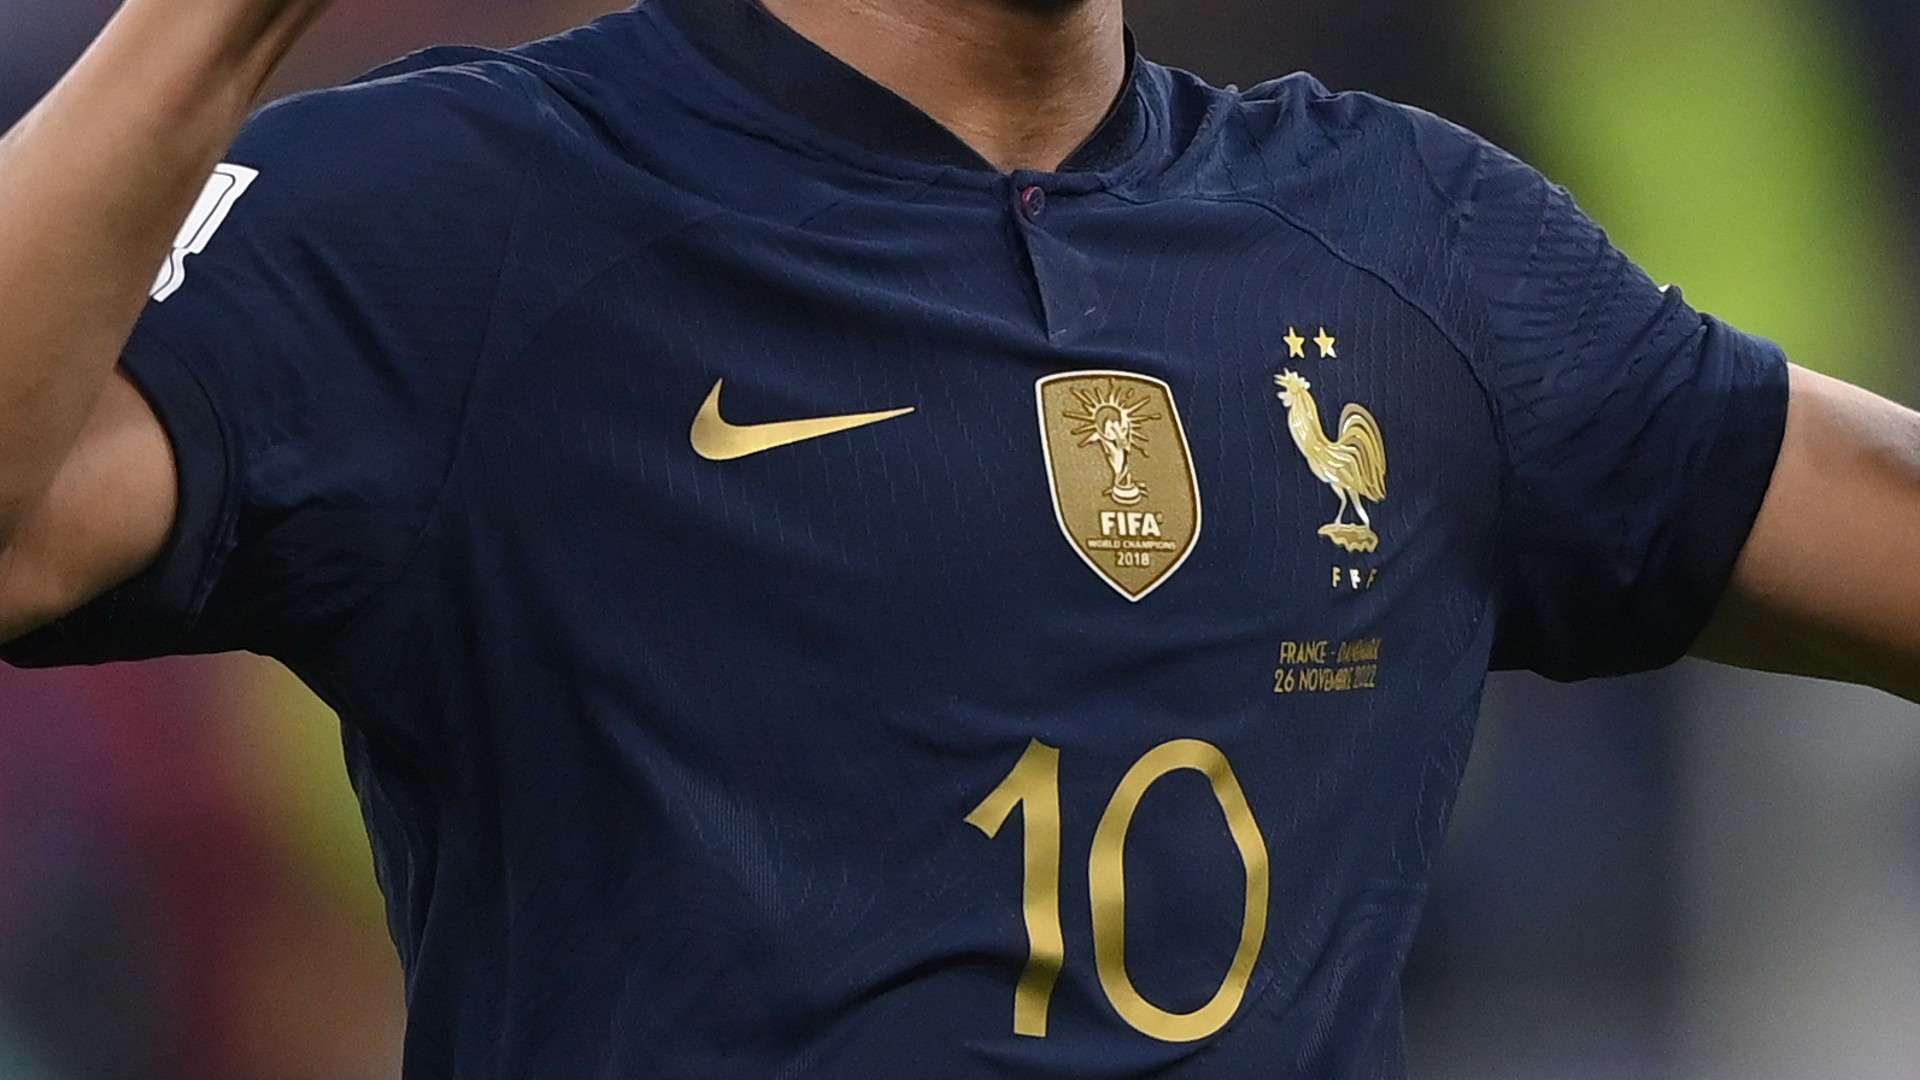 Camisa da França na Copa do Mundo 2022 (Mbappe)